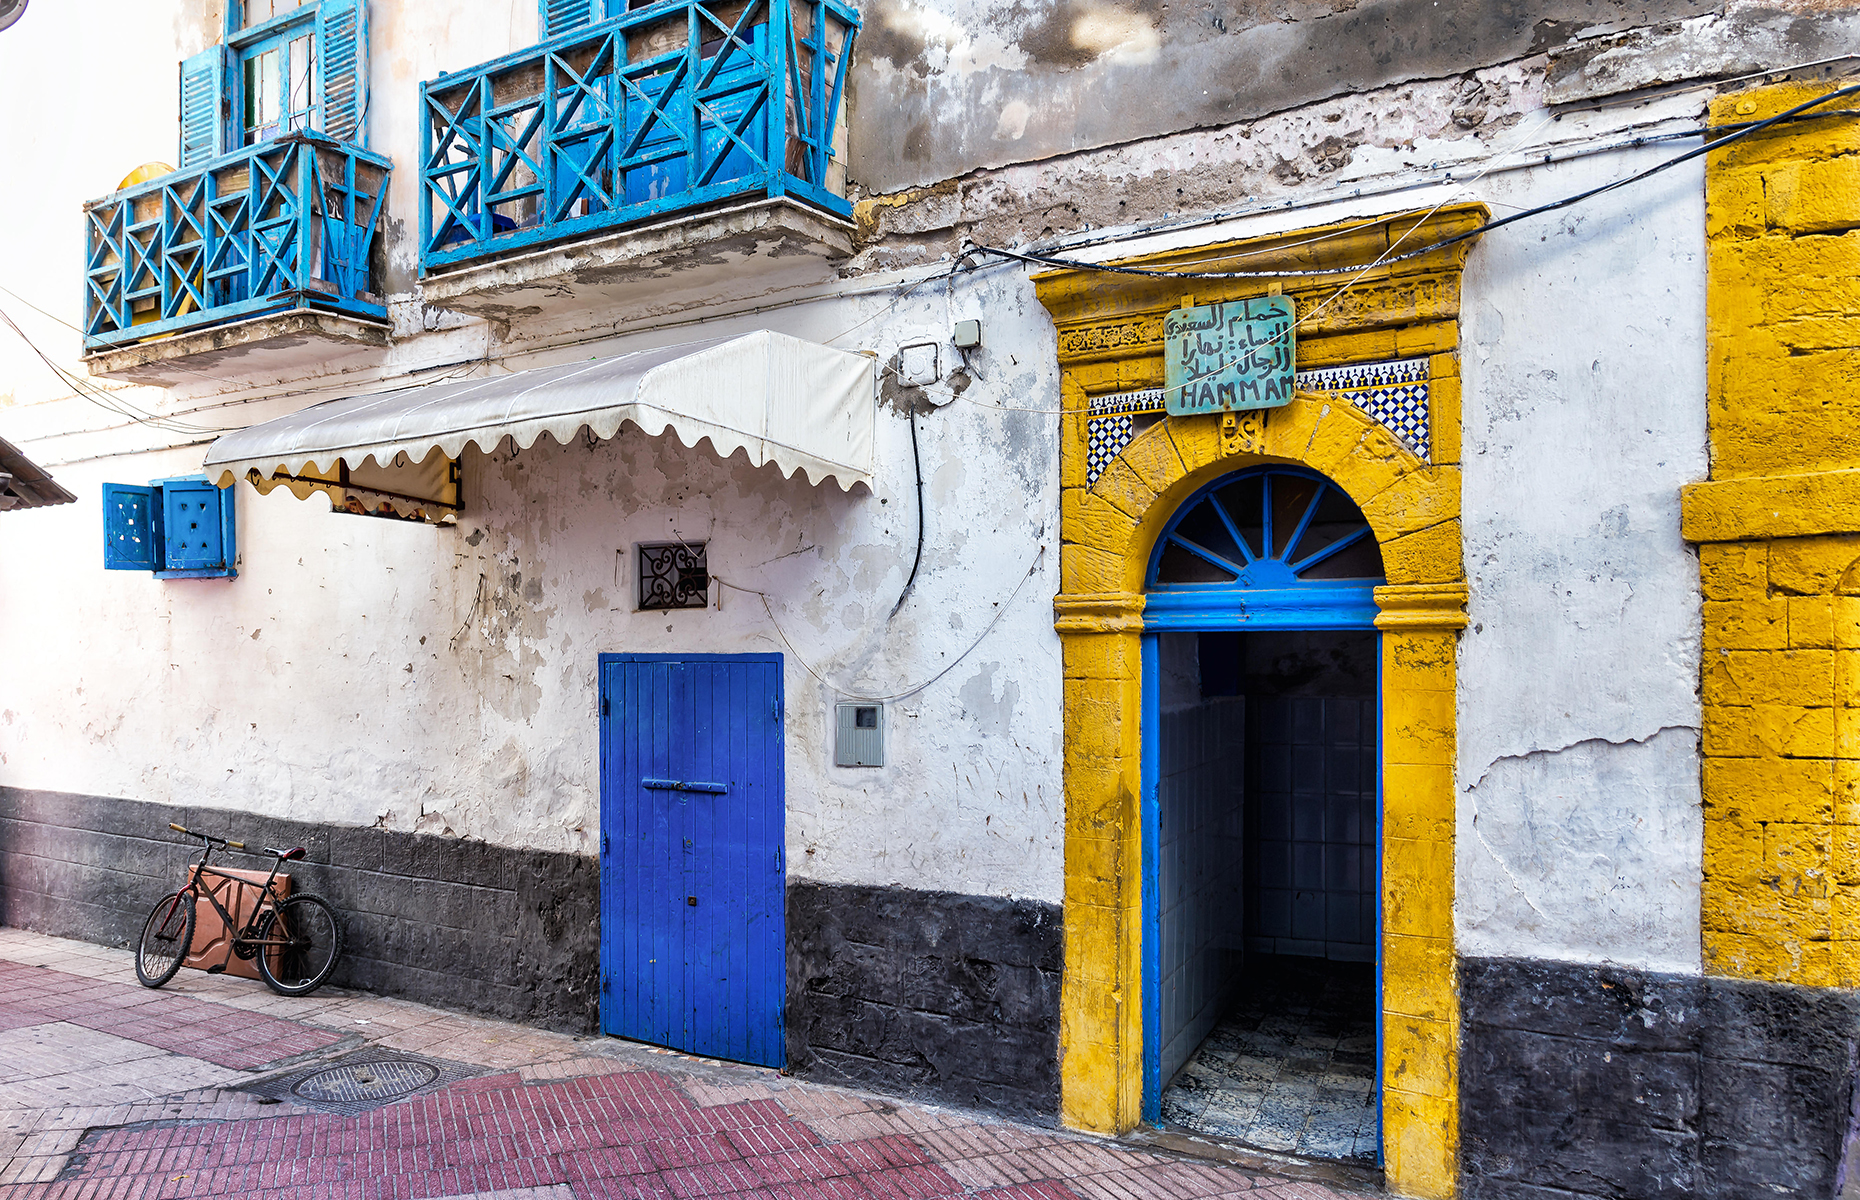 Hammam in Essaouira, Morocco. 